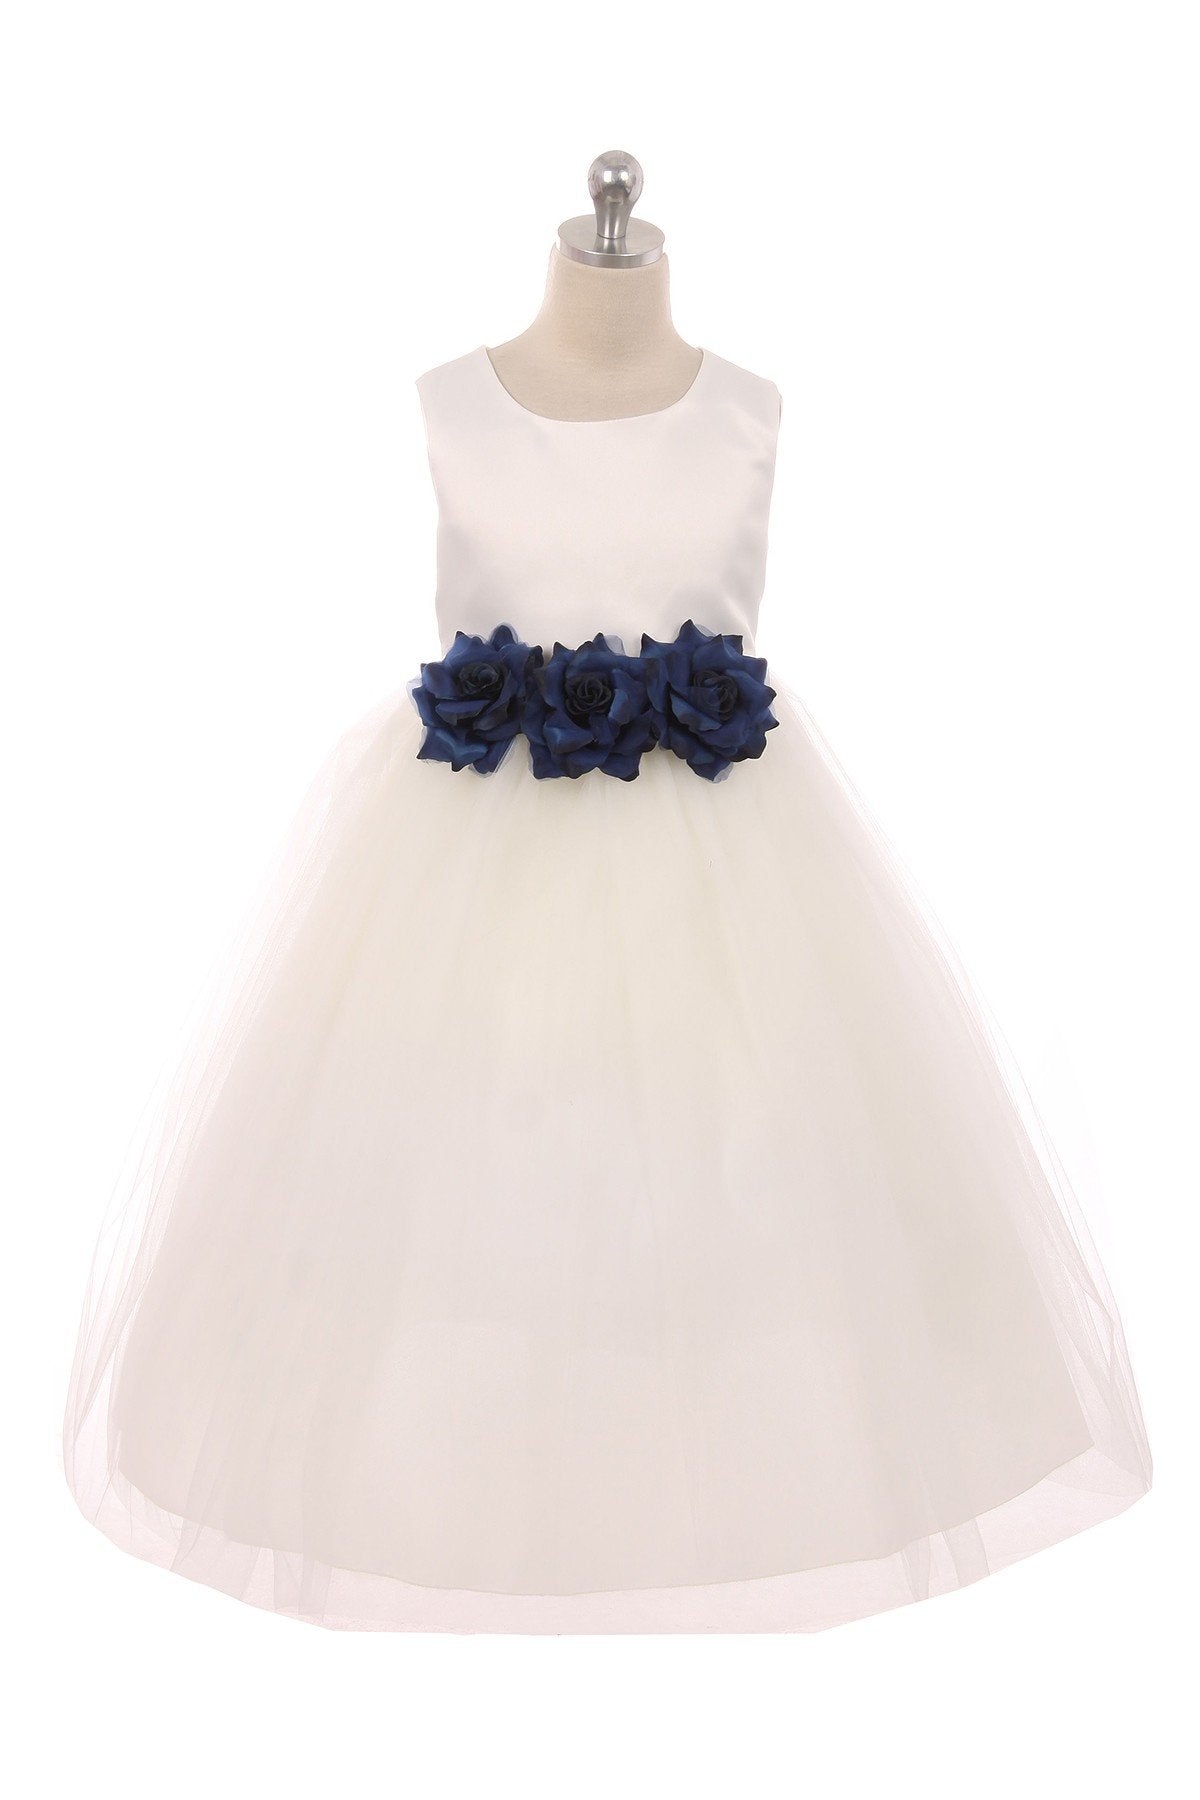 Dress - Satin 3 Flower White Dress